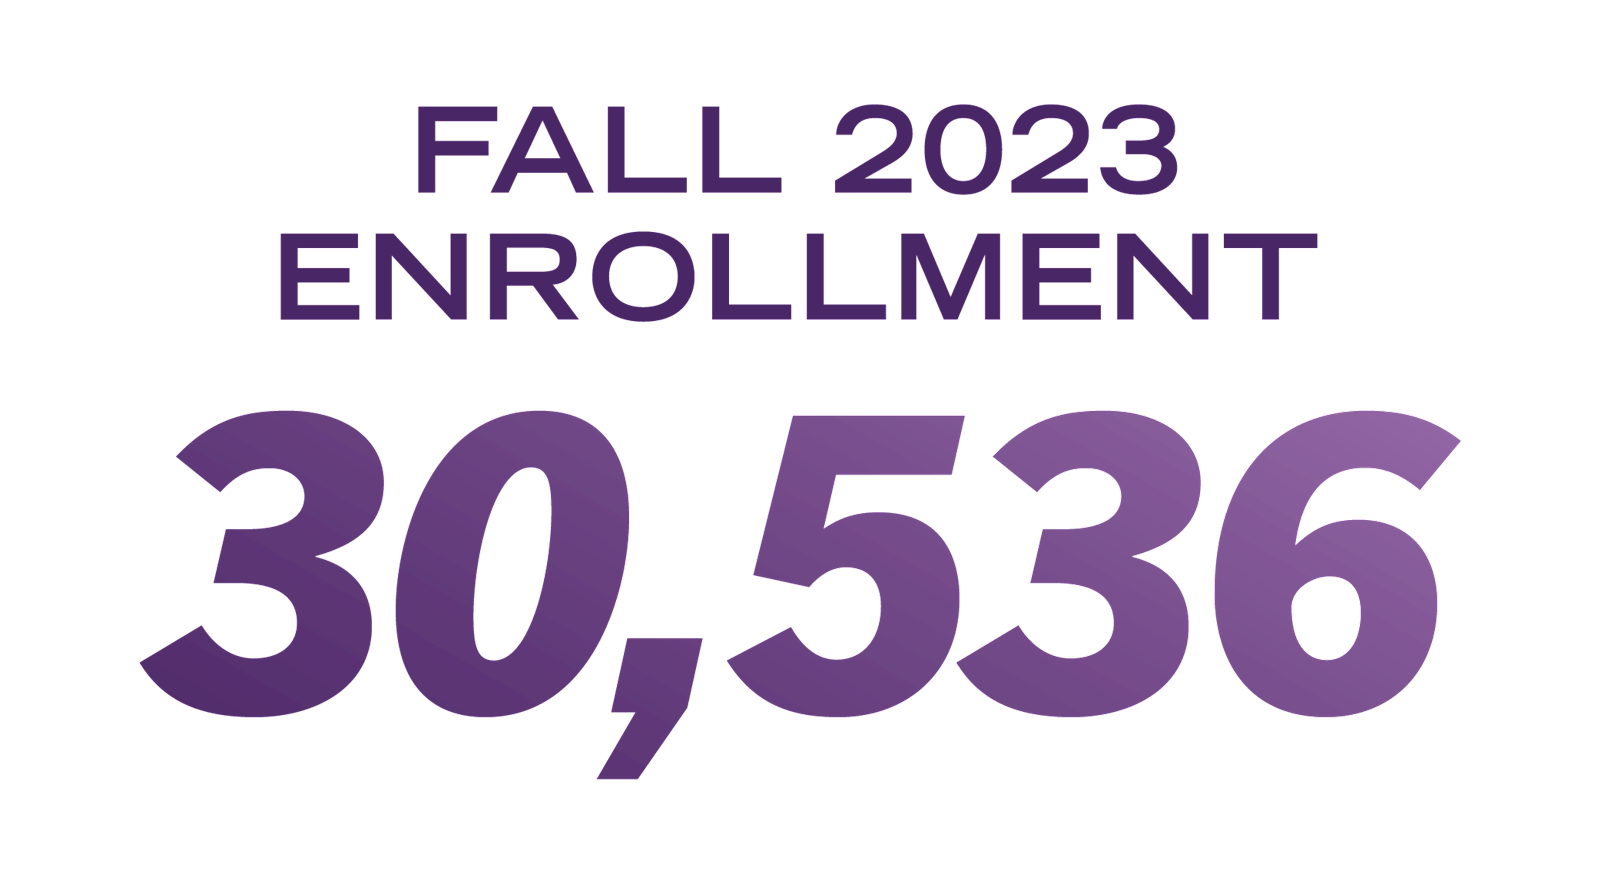 Fall 2023 student enrollment: 30,536